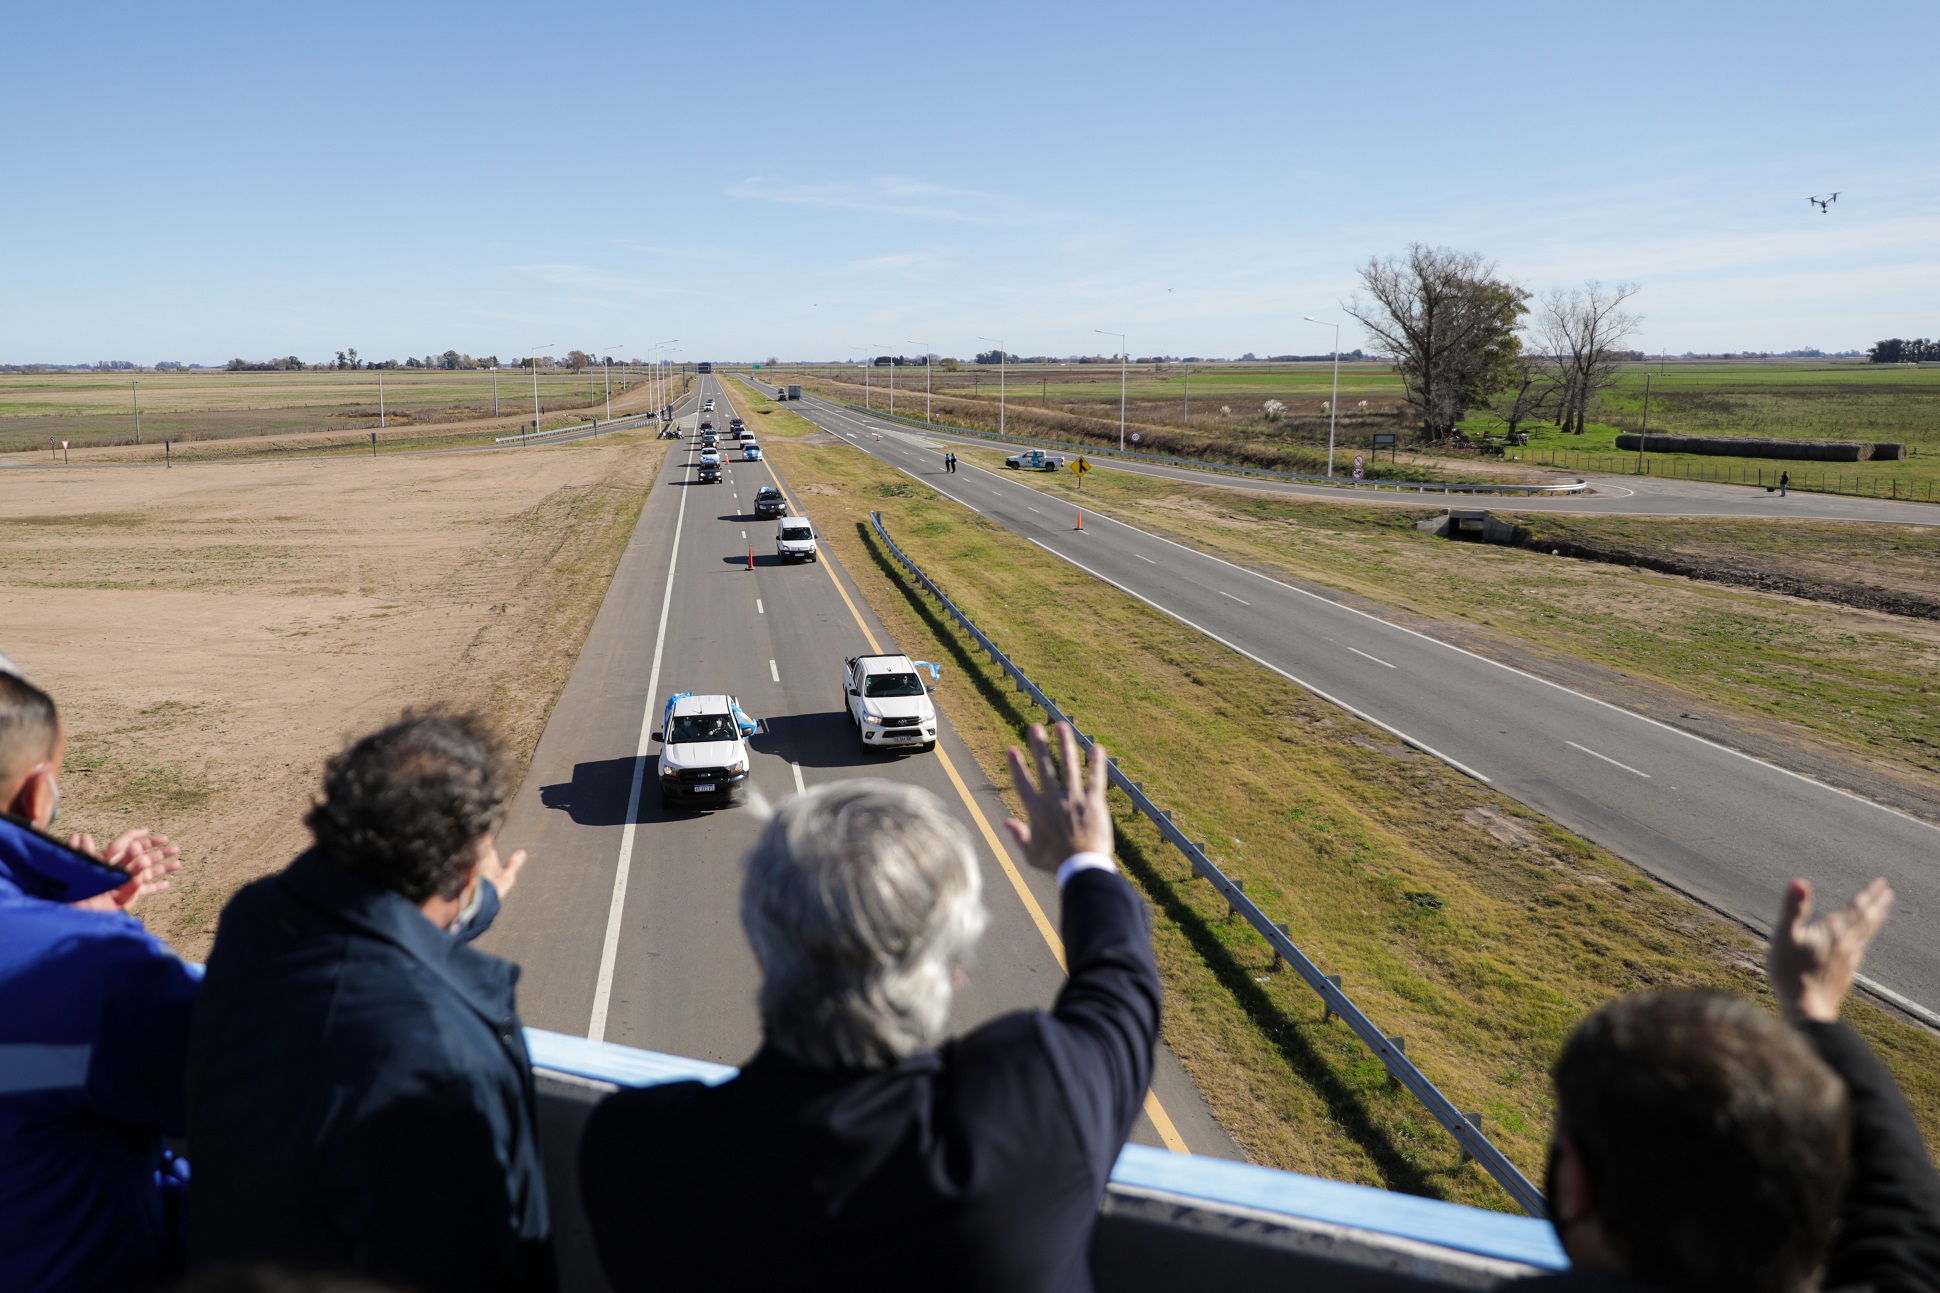 “La obra pública es conectar a la Argentina y acercar pueblos”, afirmó el Presidente